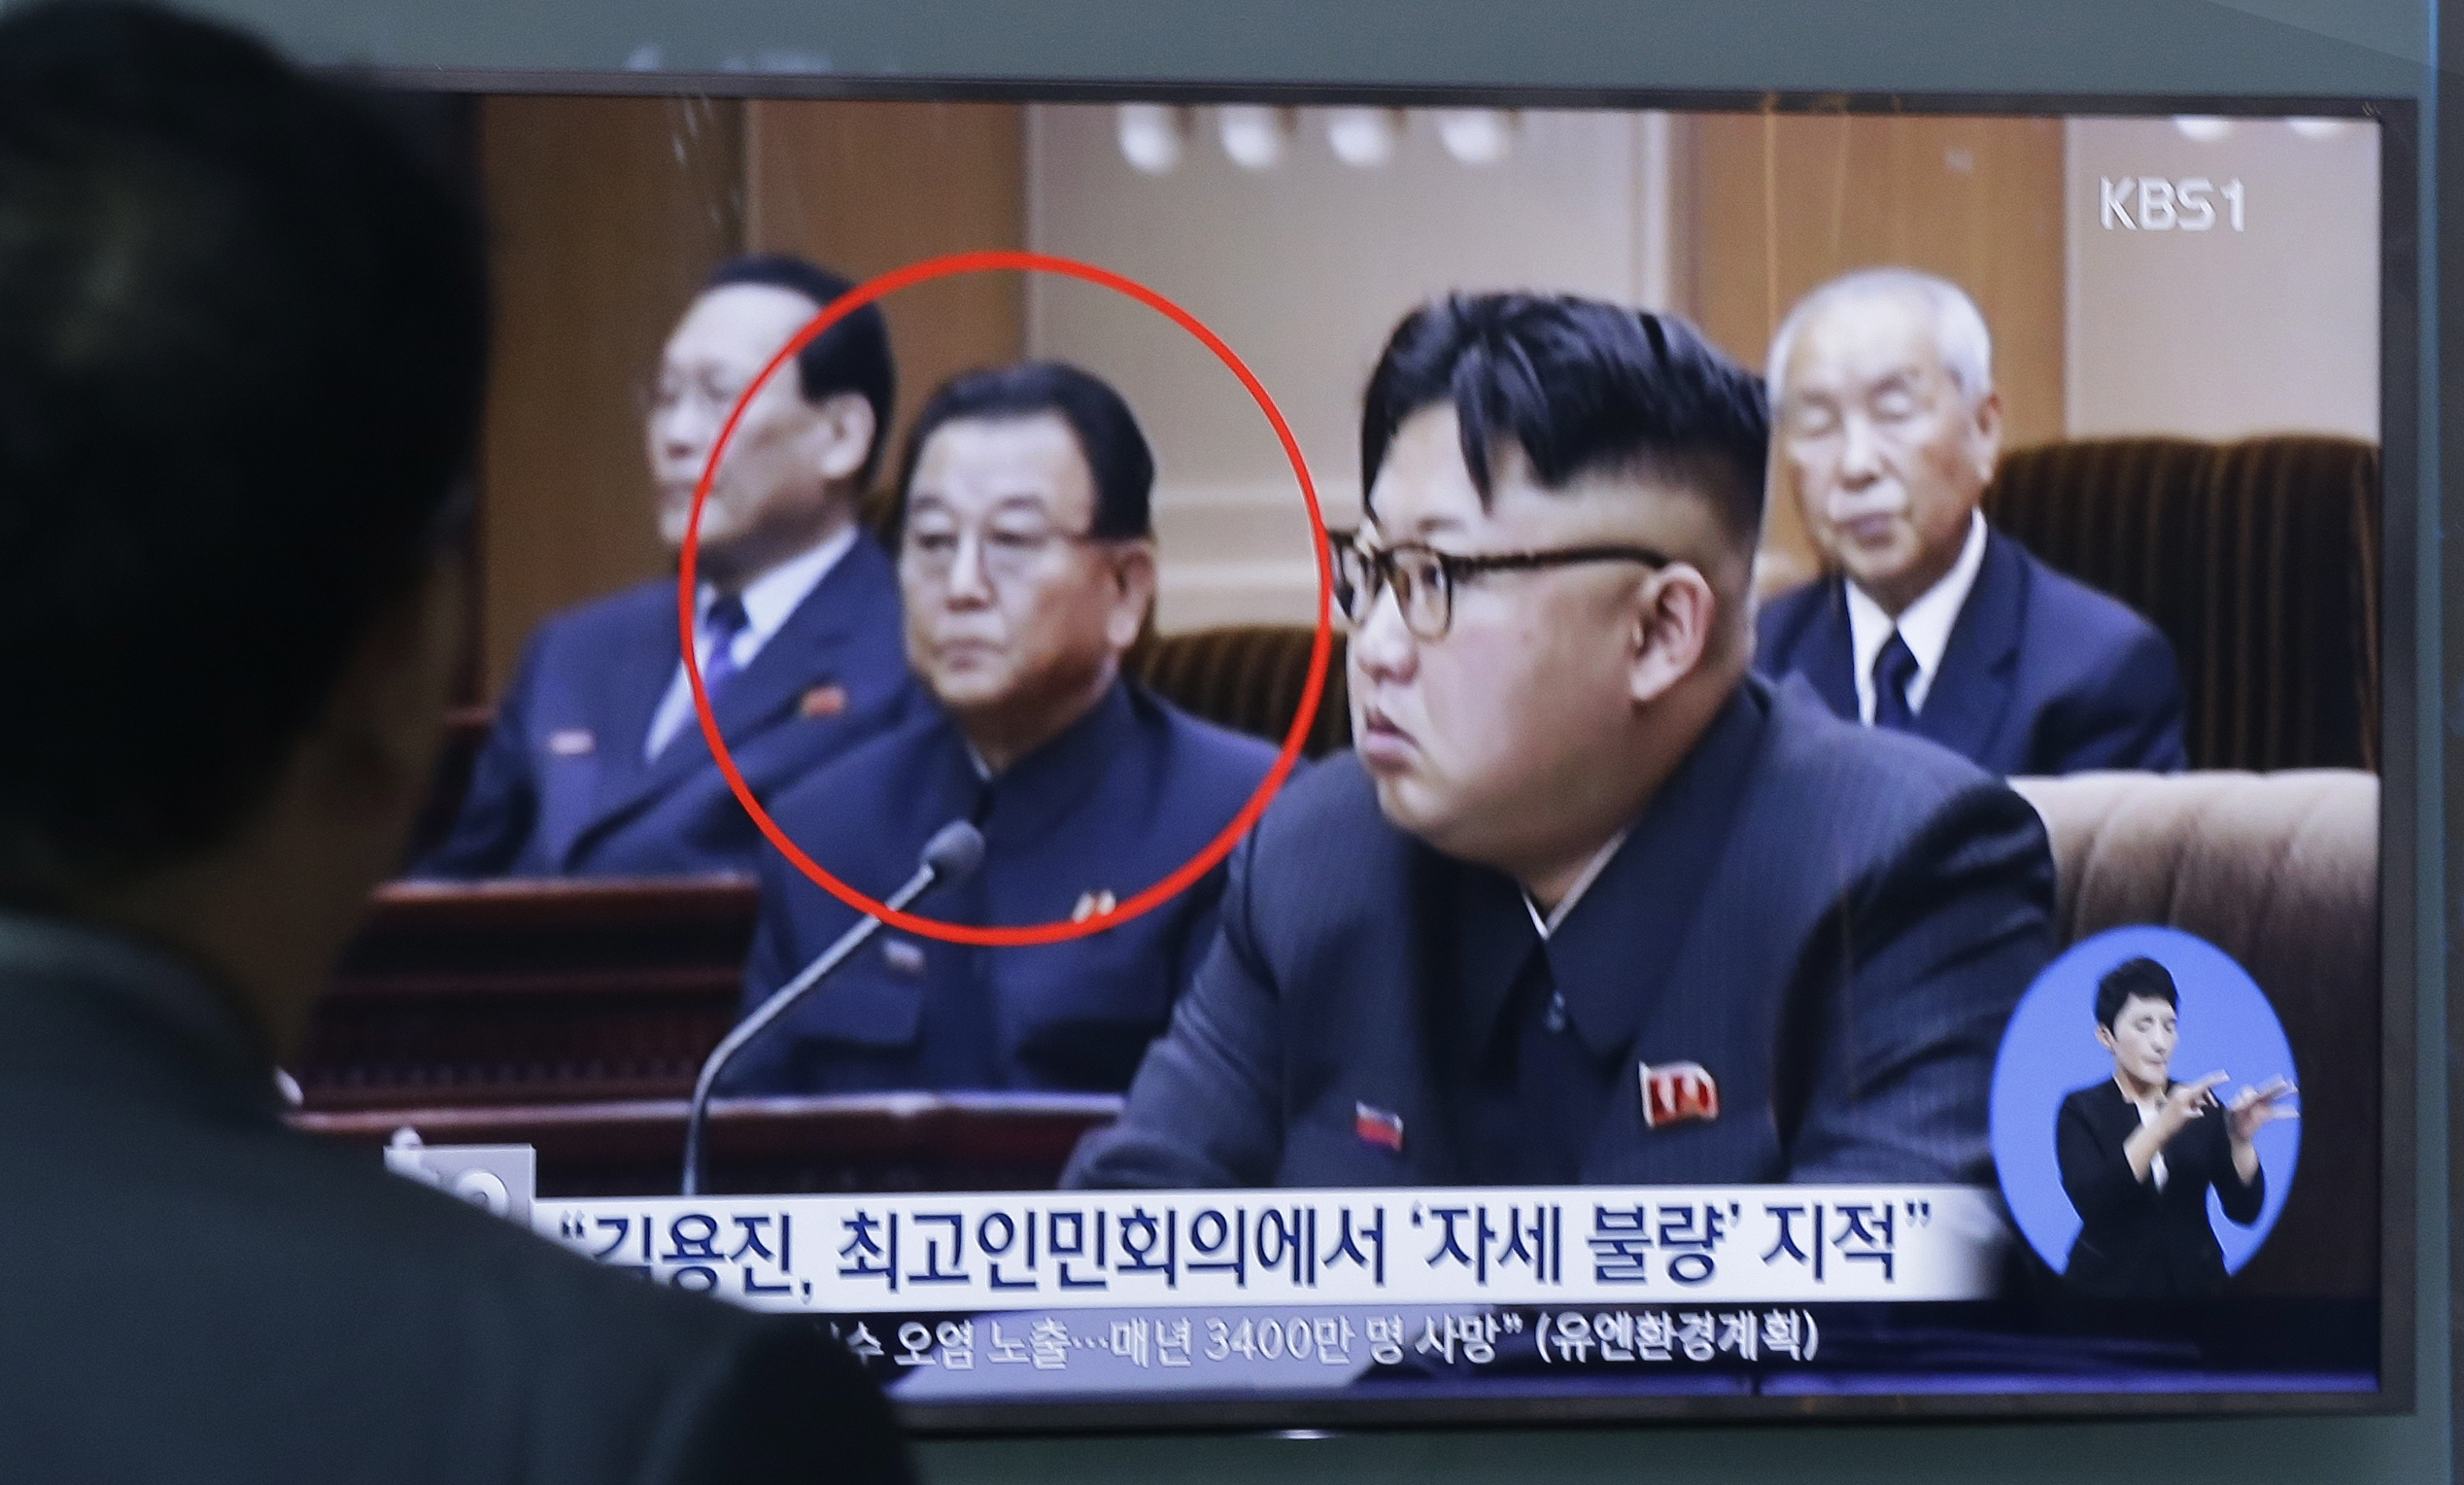 Излъчена по телевизията в Южна Корея снимка на Ким Йон-джин заедно с лидера Ким Чен-ун, едрият на преден план